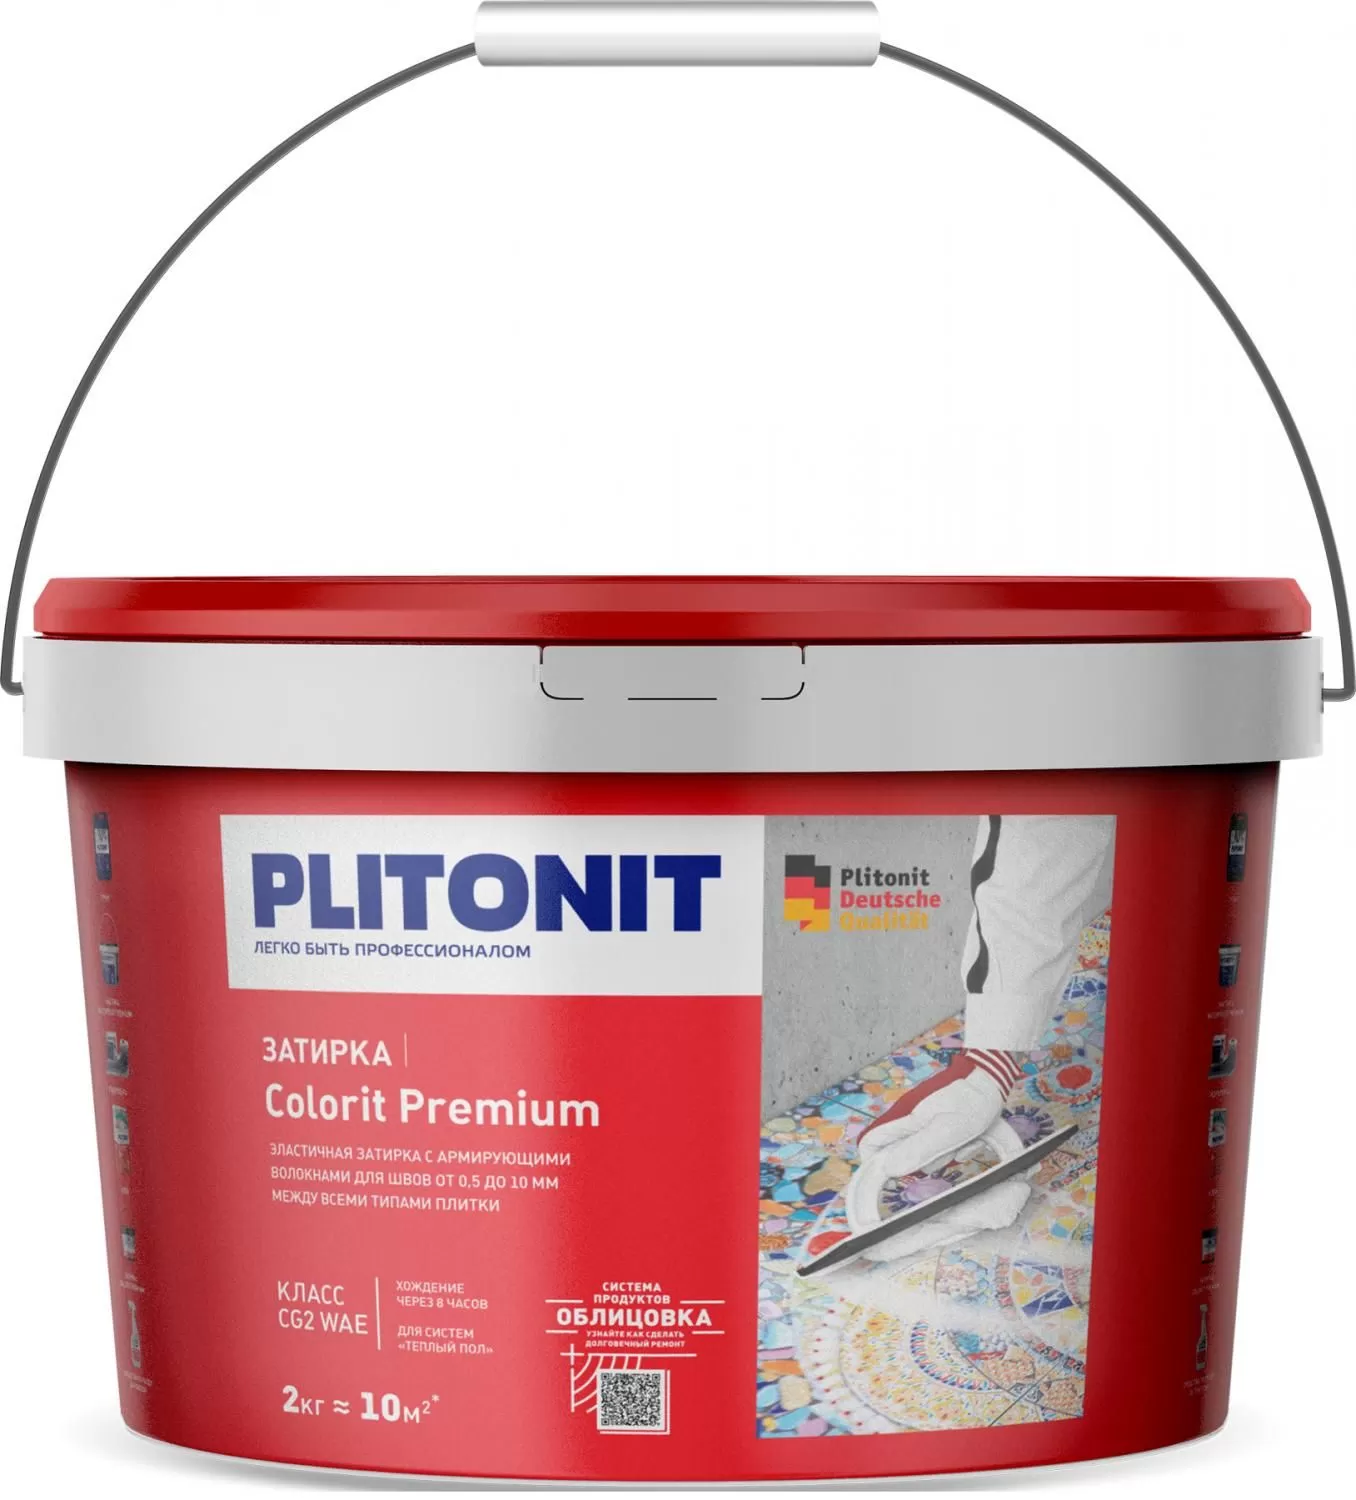 Купить Затирка Plitonit Colorit Premium кремовая 2 кг цементная